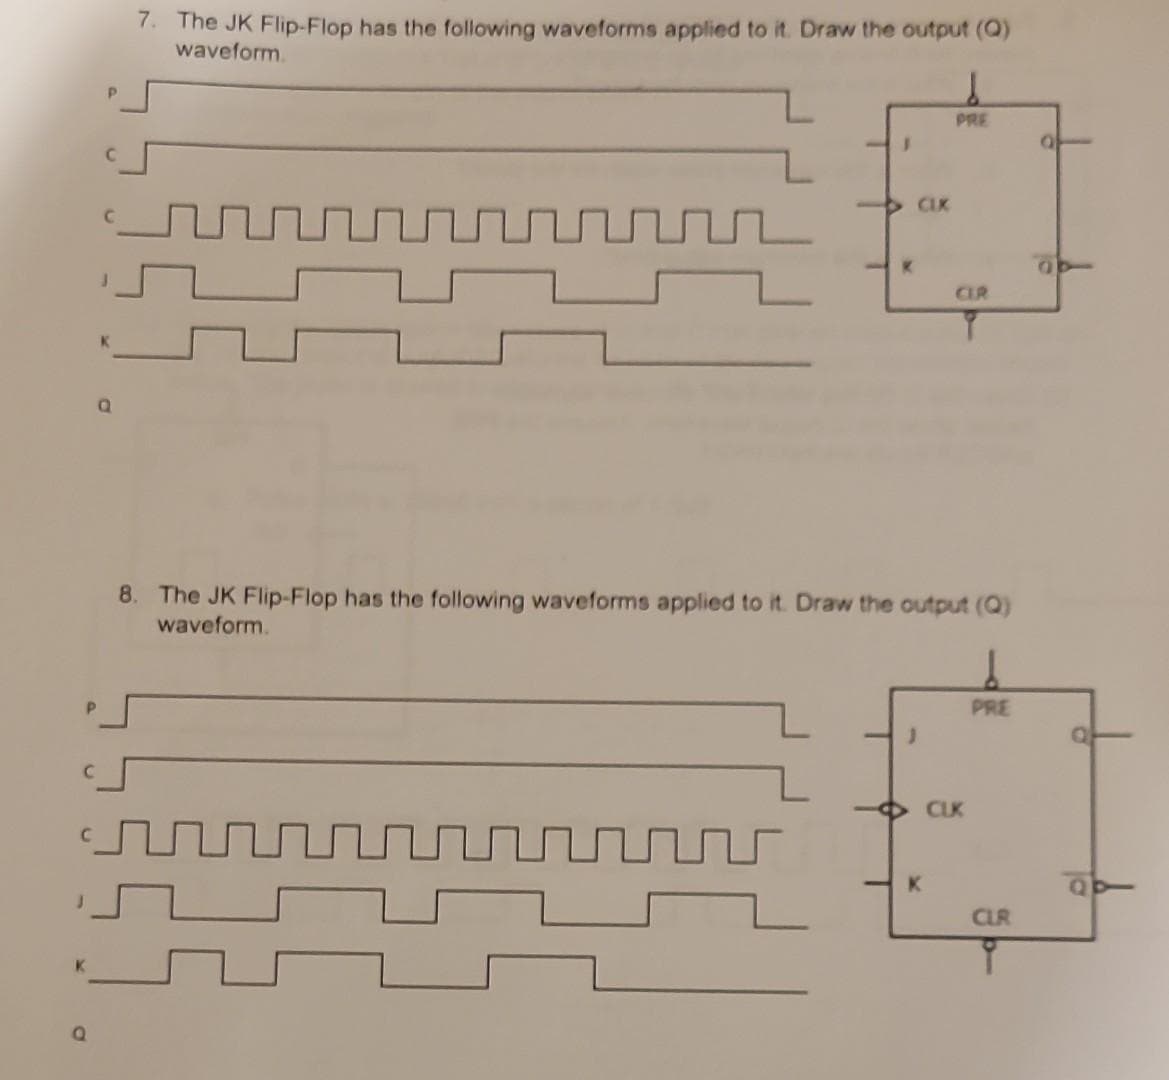 Q
P
C
a
7. The JK Flip-Flop has the following waveforms applied to it. Draw the output (Q)
waveform.
J
K
CIK
PRE
J
CIR
8. The JK Flip-Flop has the following waveforms applied to it. Draw the output (Q)
waveform.
CLK
PRE
CLR
Q